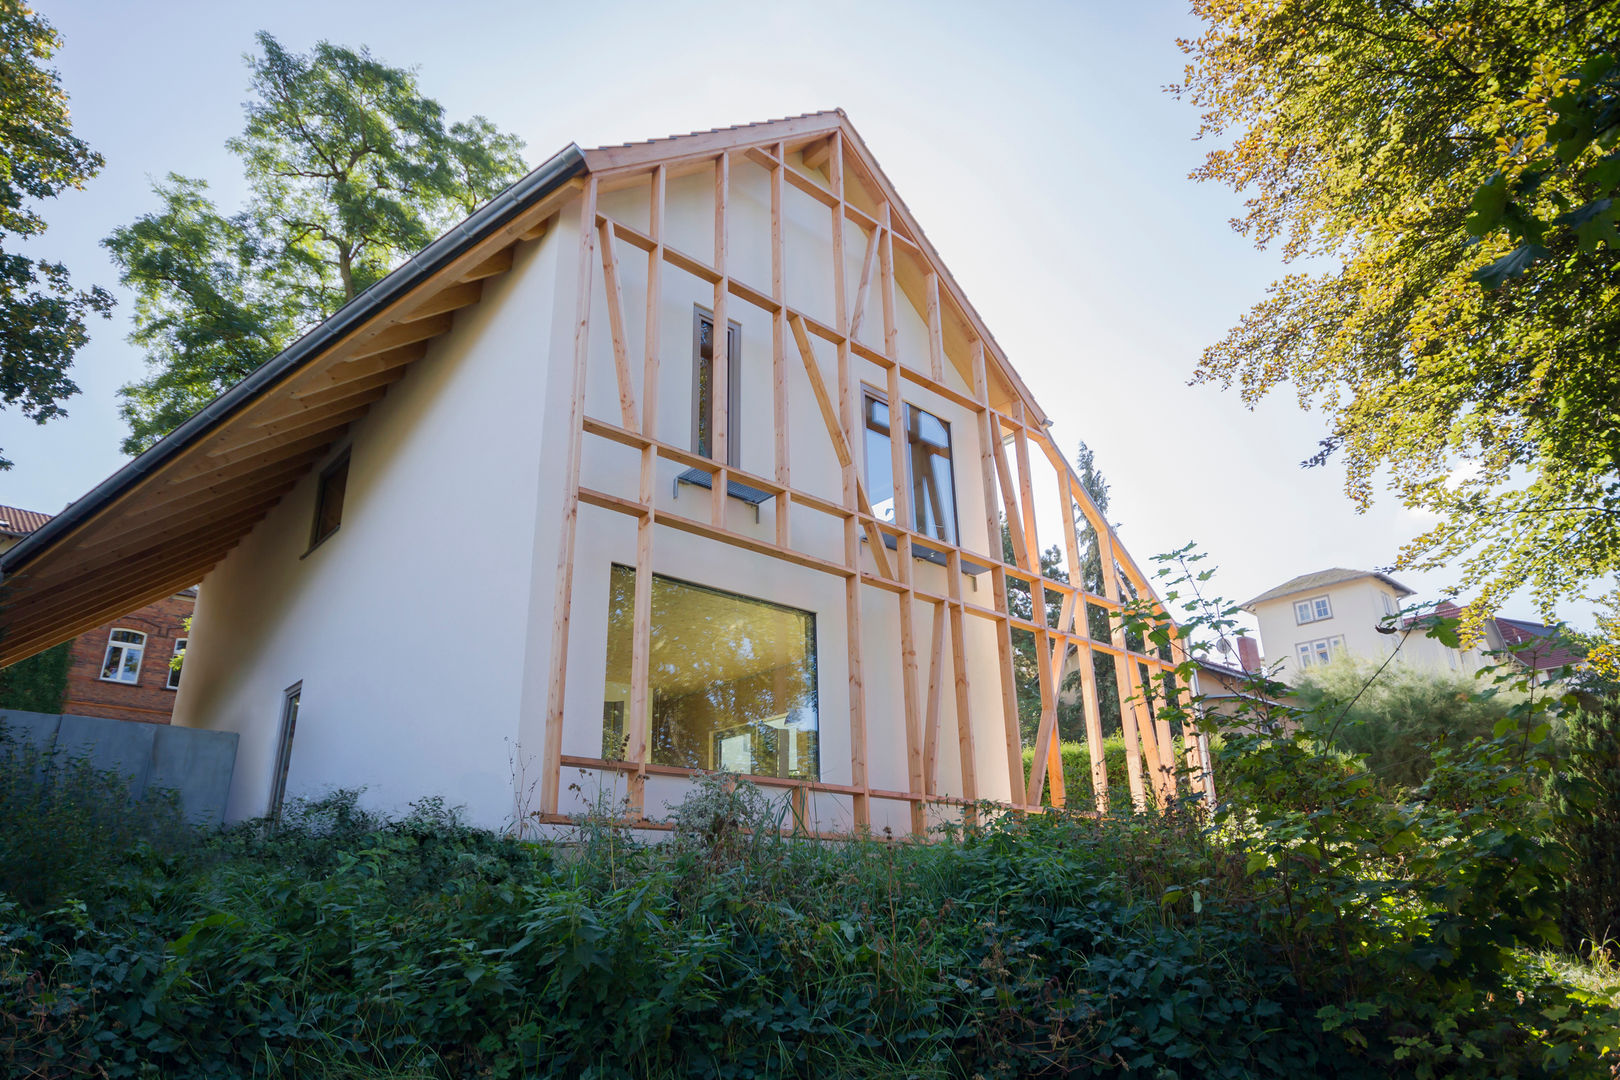 Einfamilienhaus Schöne Aussicht Planungsgruppe Korb GmbH Architekten & Ingenieure Moderne Häuser Holz Holznachbildung